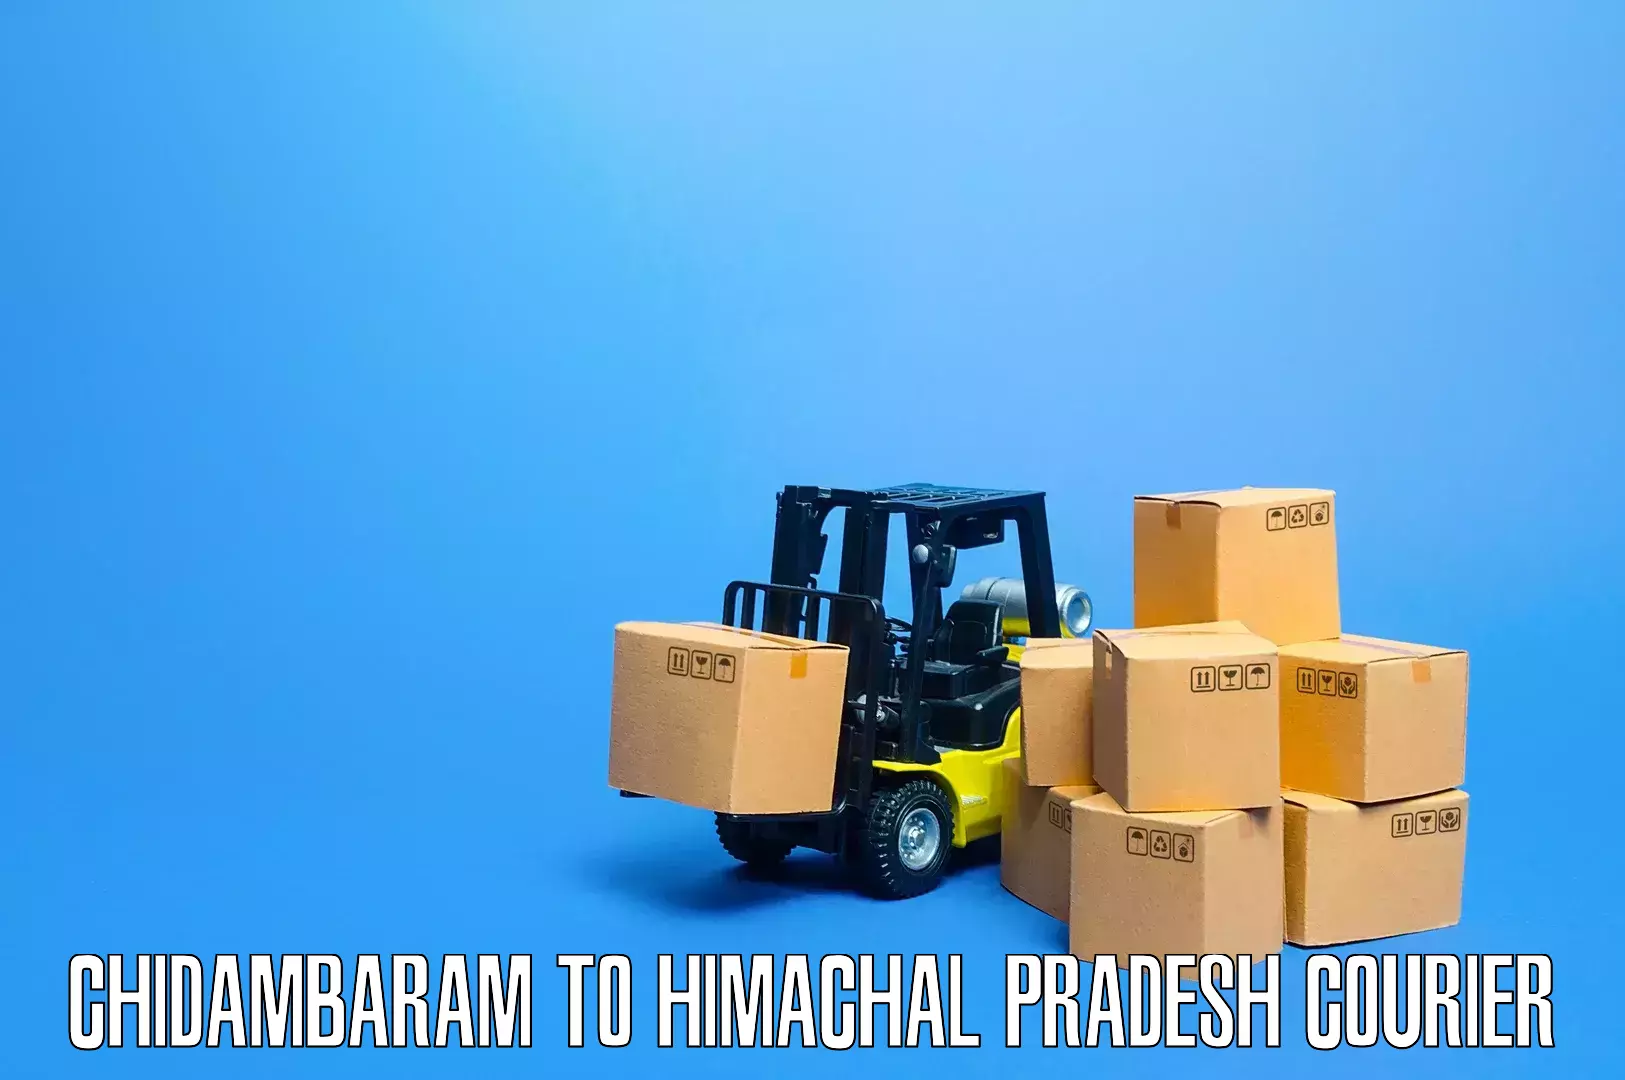 Furniture handling services Chidambaram to Chamba